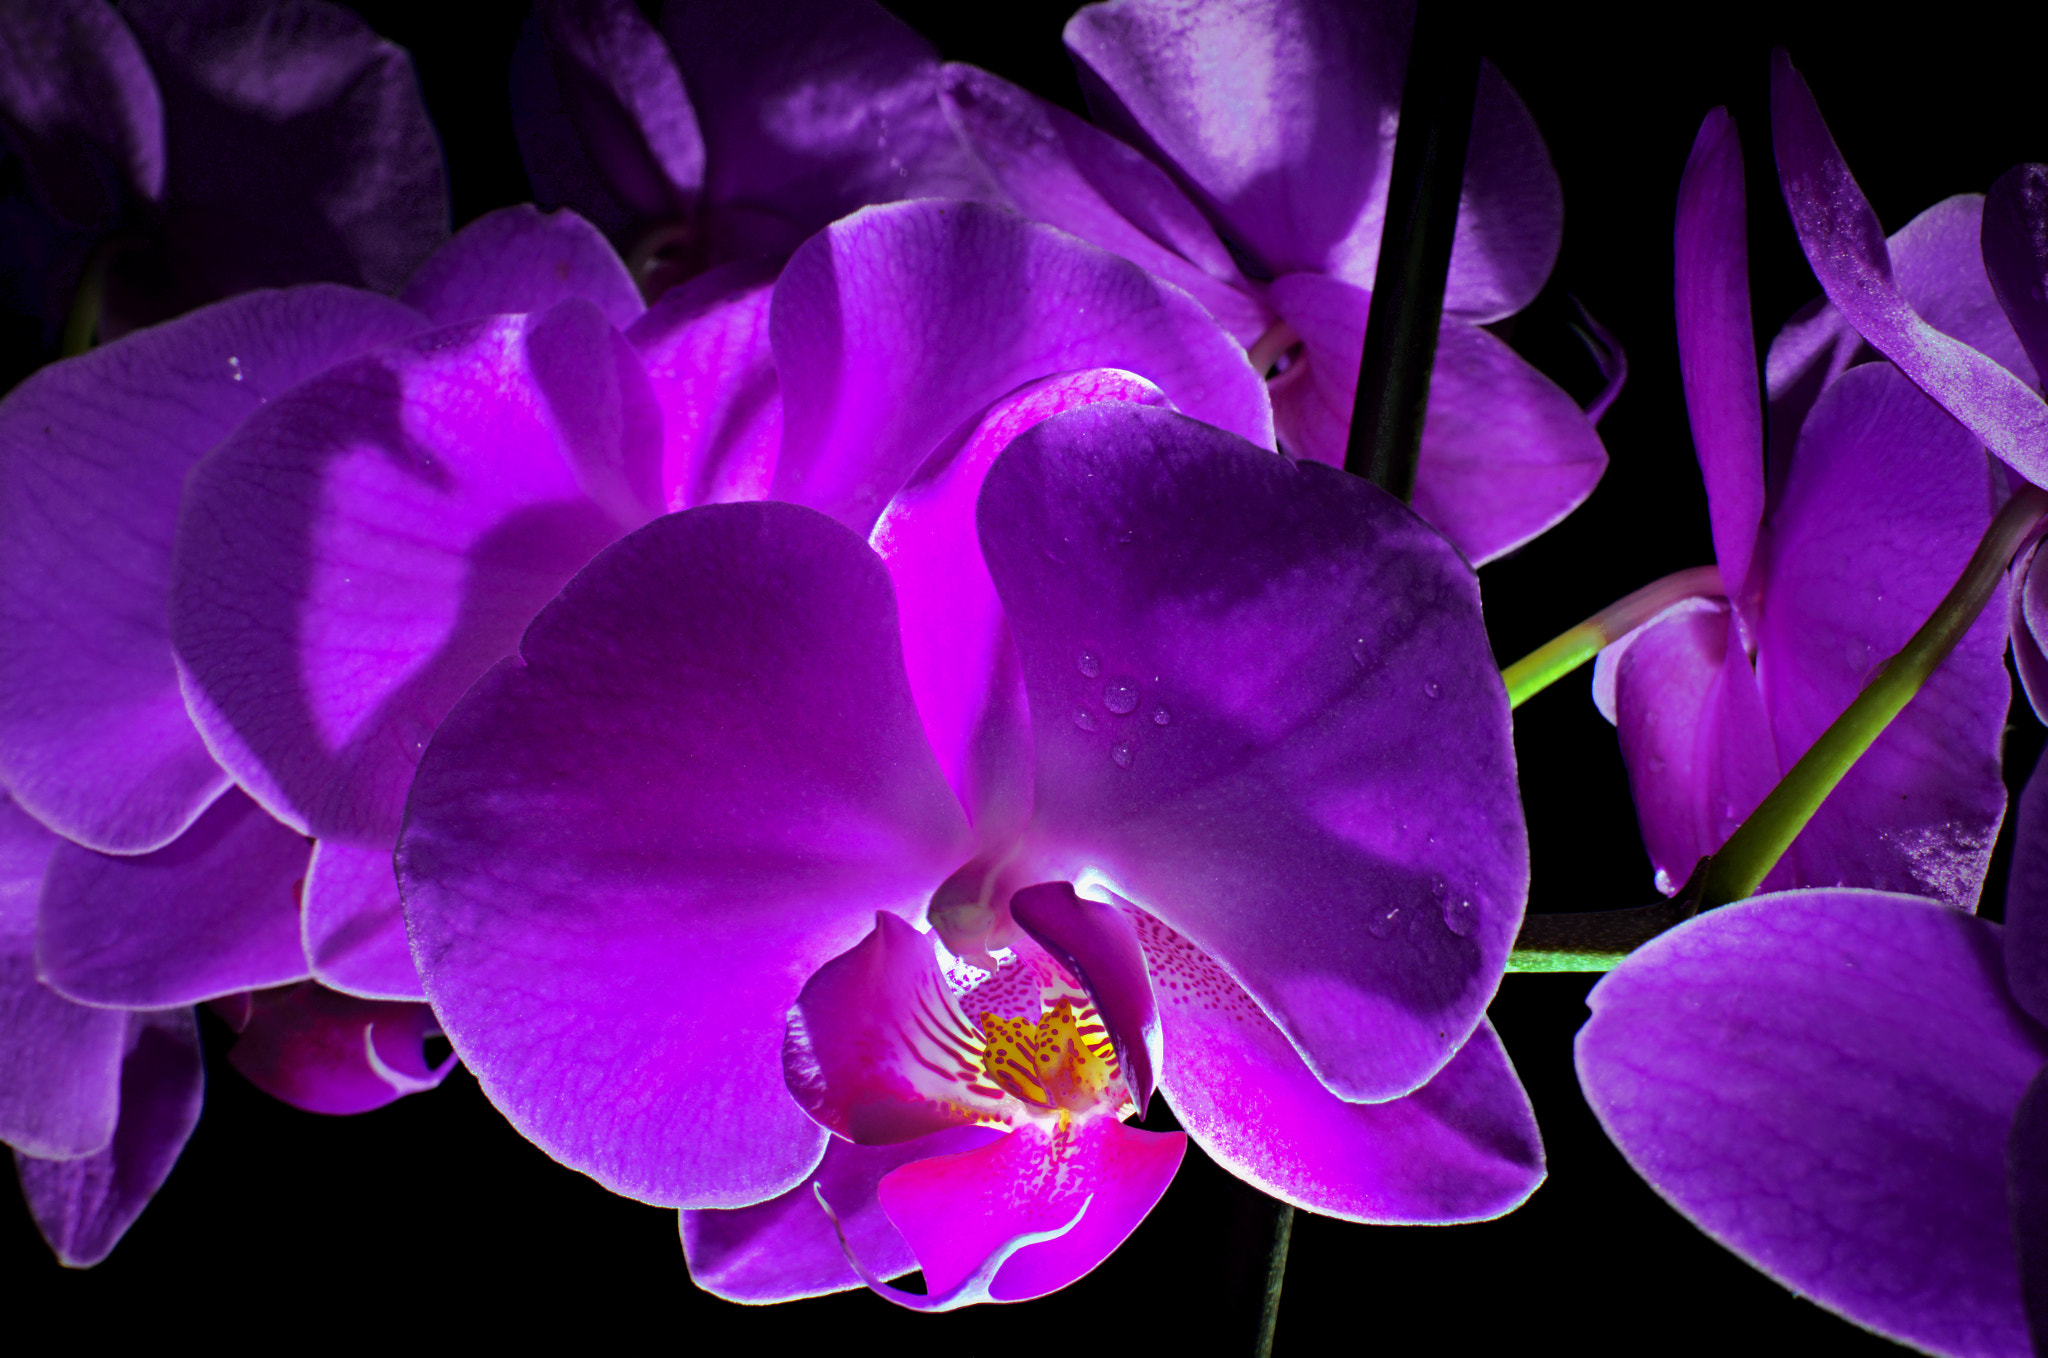 Nikon D7000 + AF-S Nikkor 35mm f/1.8G sample photo. Rose coloured dreams photography